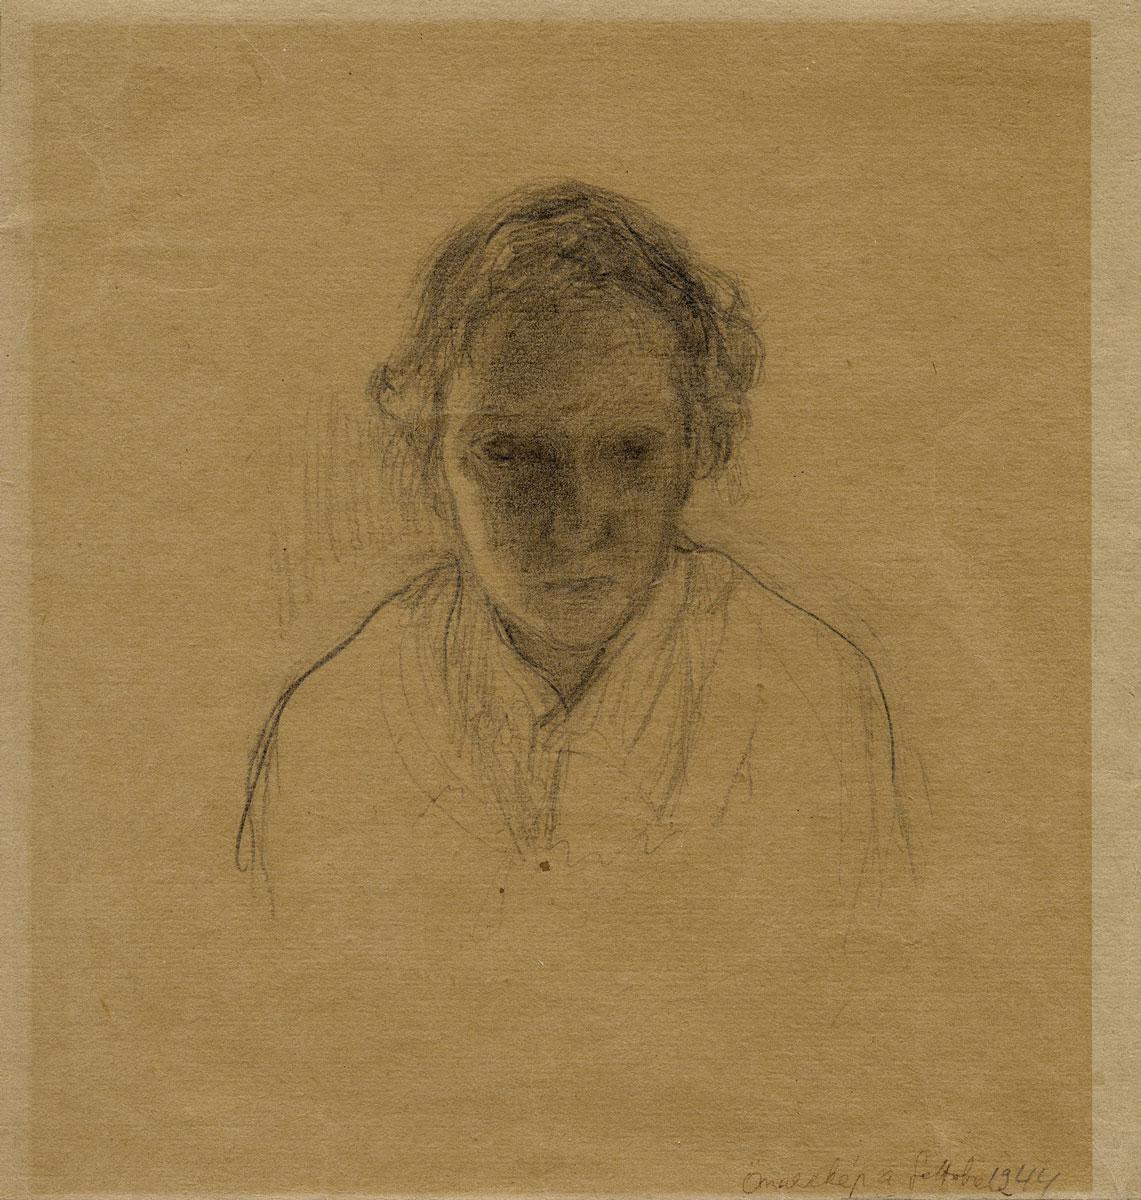 Ilka Gedő (1921-1985), Self-Portrait in the Ghetto, Ghetto Budapest, 1944